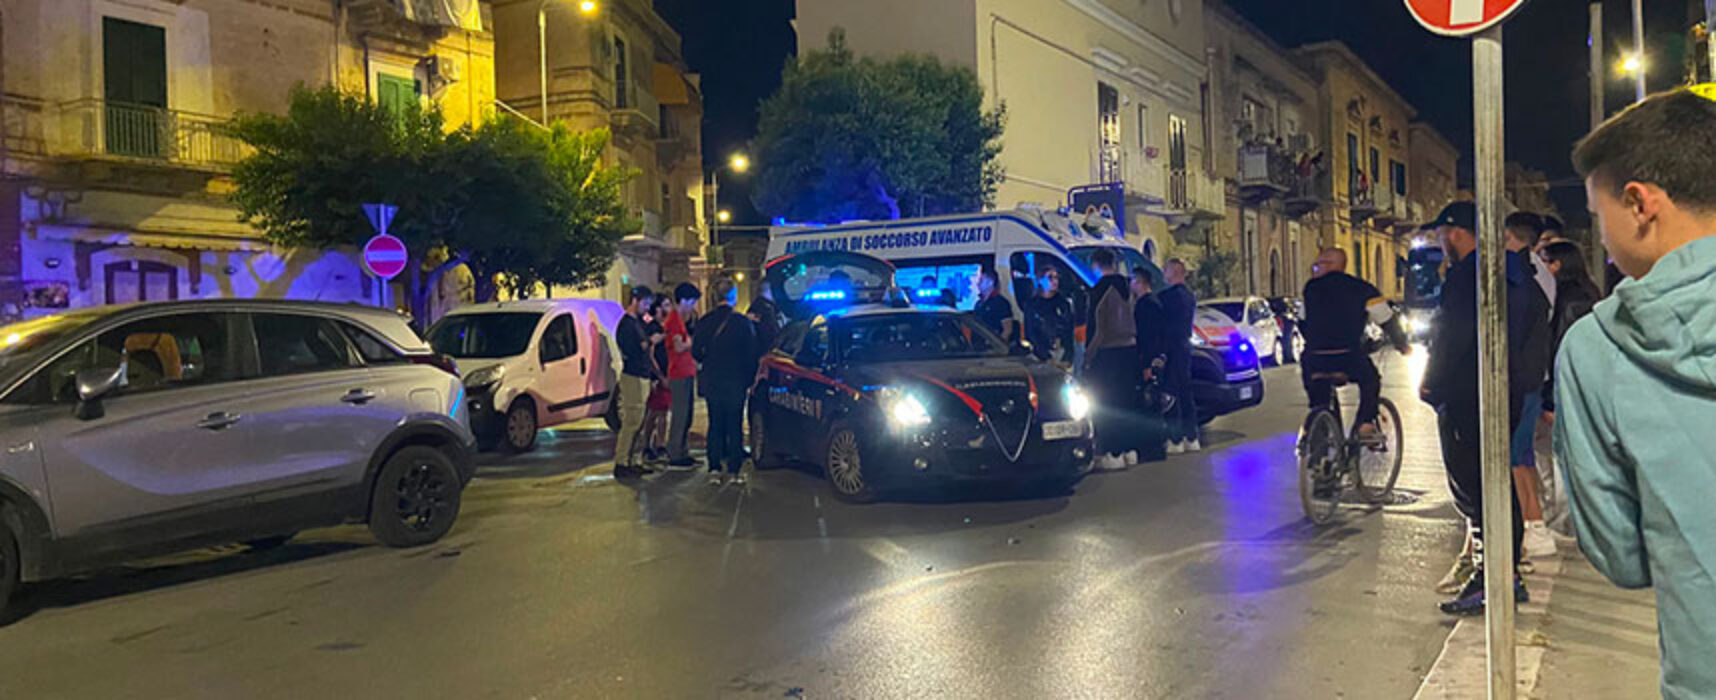 Incidente su via Bovio, giovane ferita trasportata in ospedale